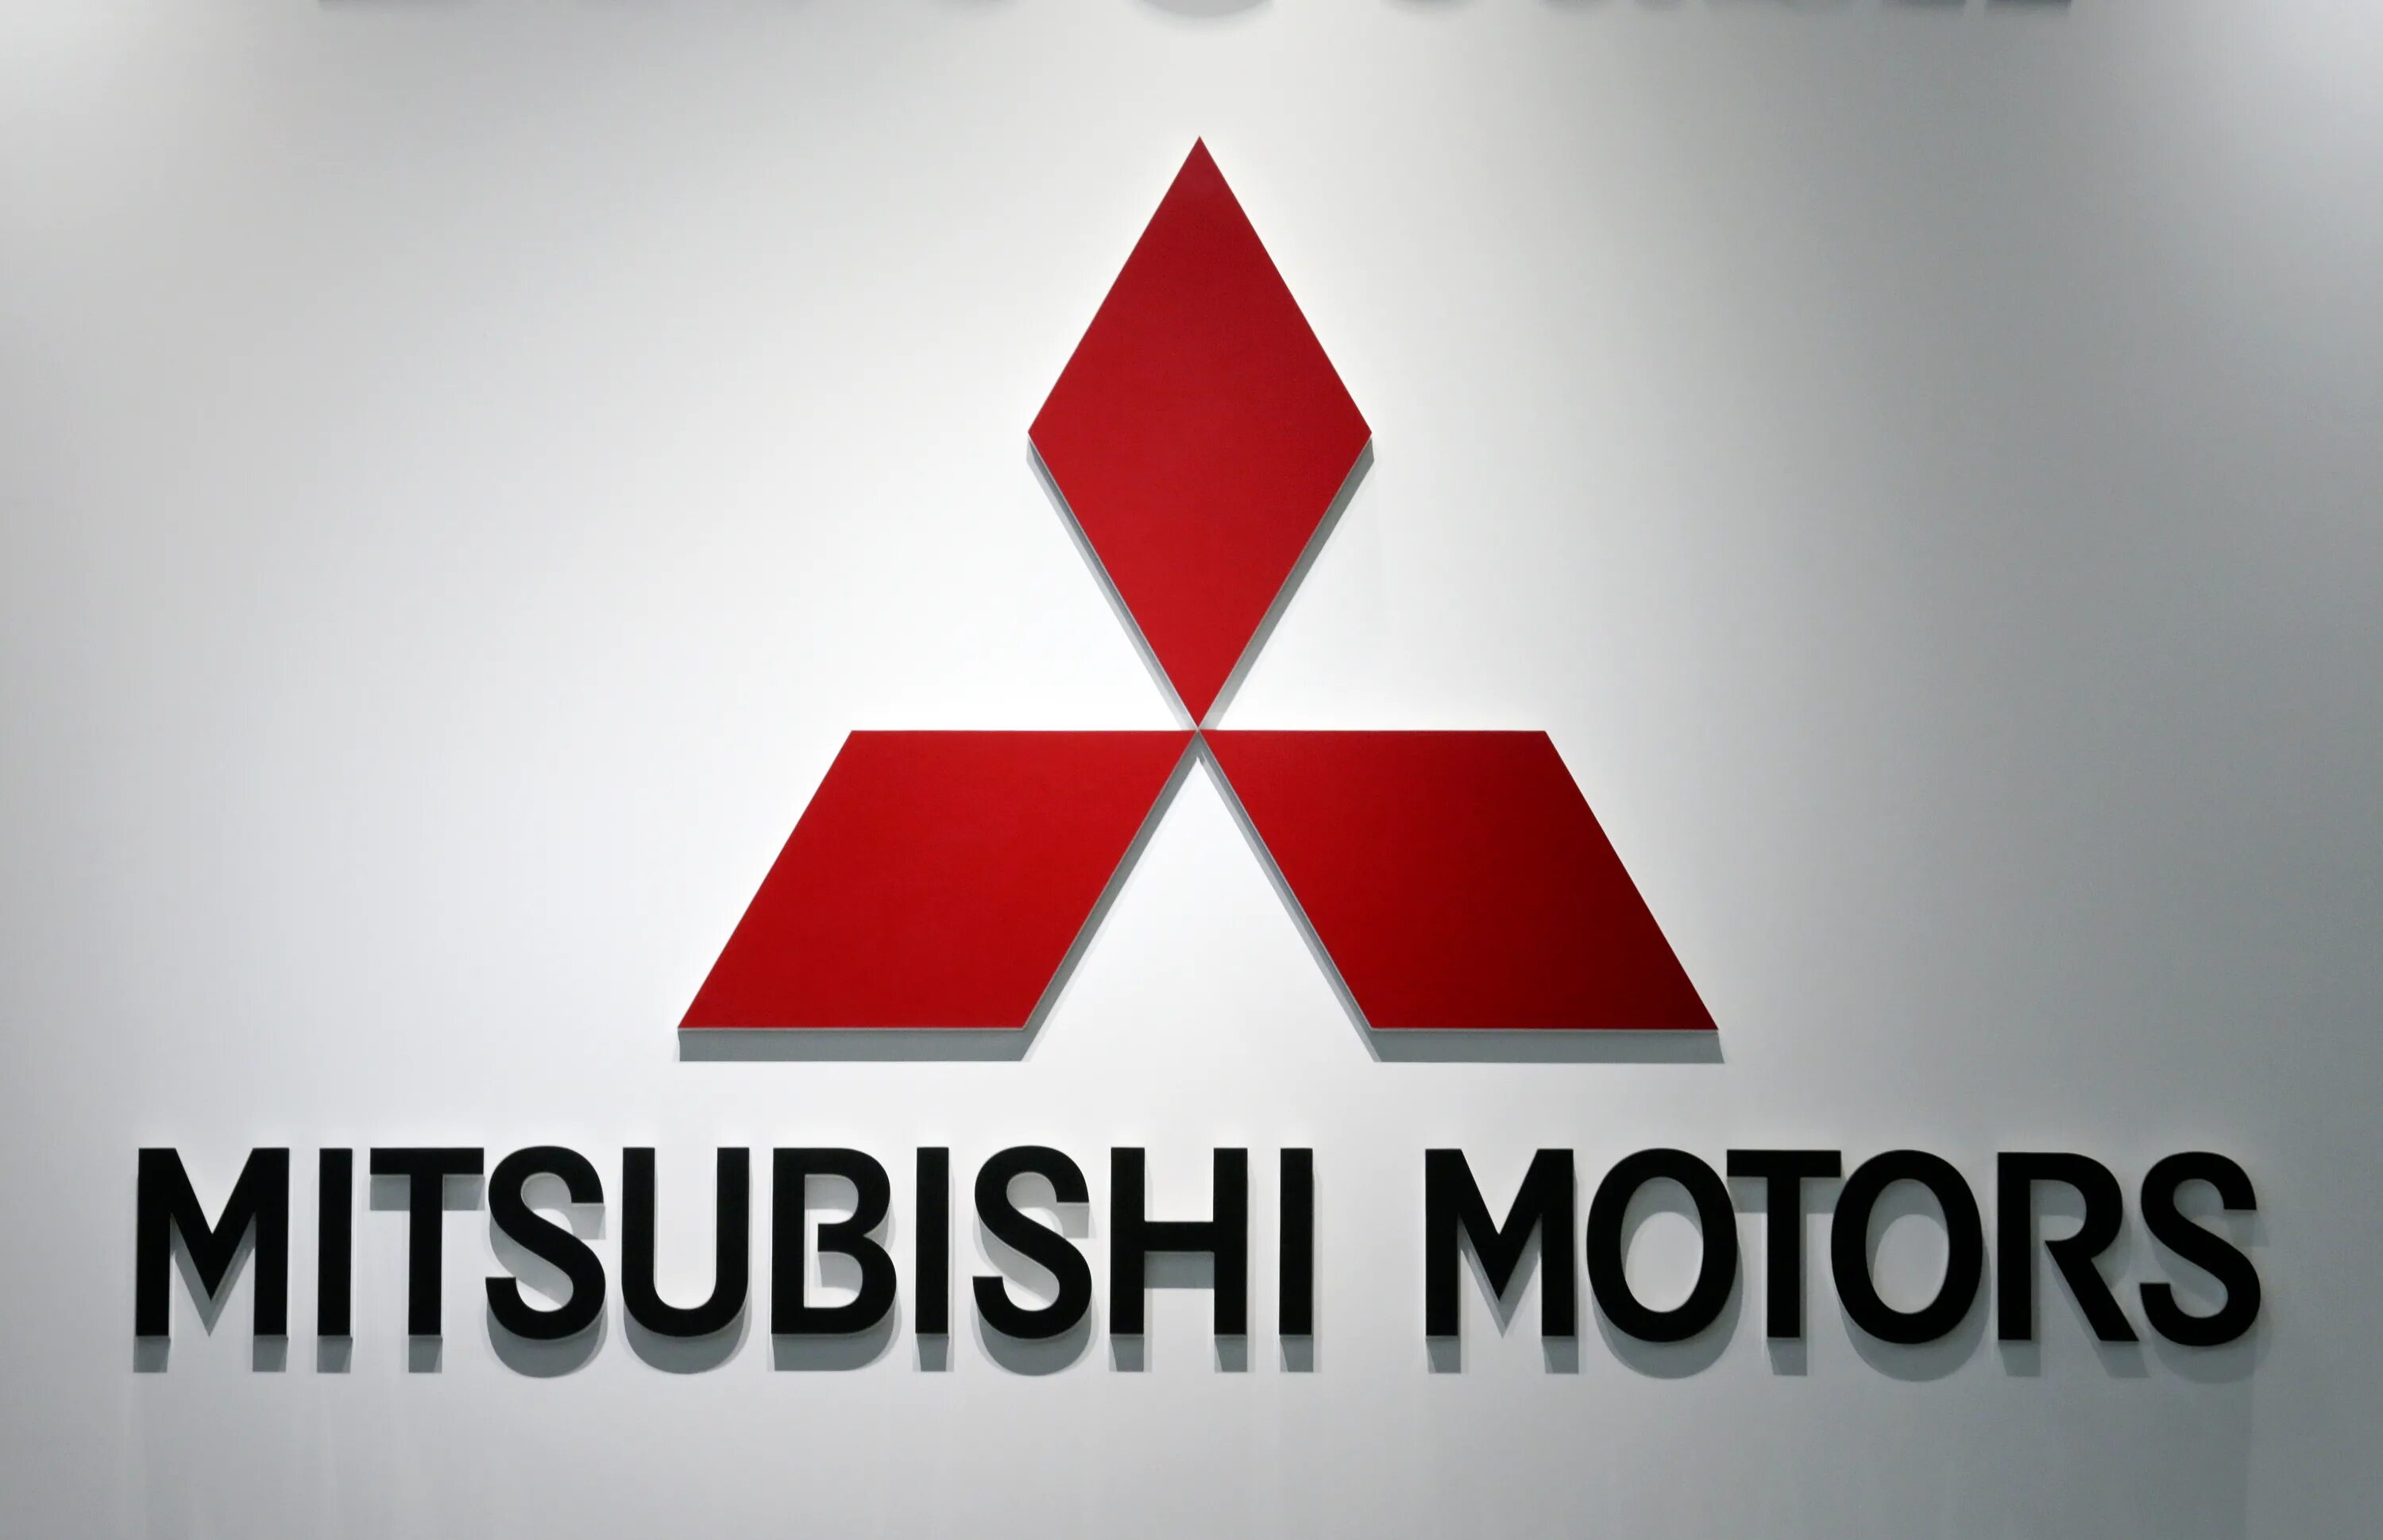 Mitsubishi logo 2021. Mitsubishi значок Mitsubishi. Mitsubishi Motors Corporation logo. Mitsubishi Group автомобили Mitsubishi 2010 года. Mitsubishi c